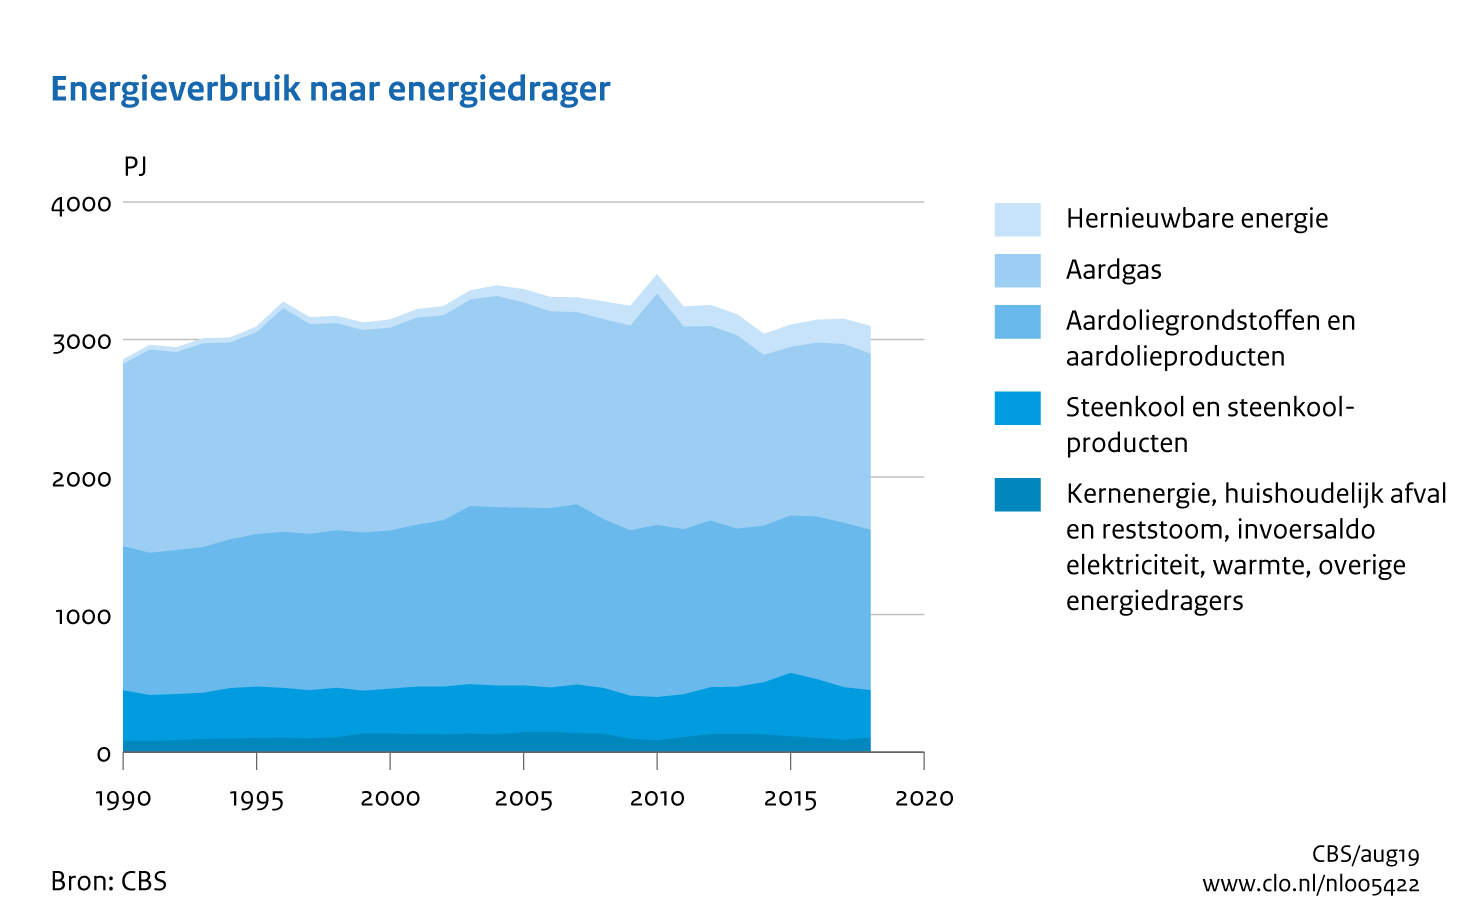 Figuur Energieverbruik per energiedrager 1990-2018. In de rest van de tekst wordt deze figuur uitgebreider uitgelegd.